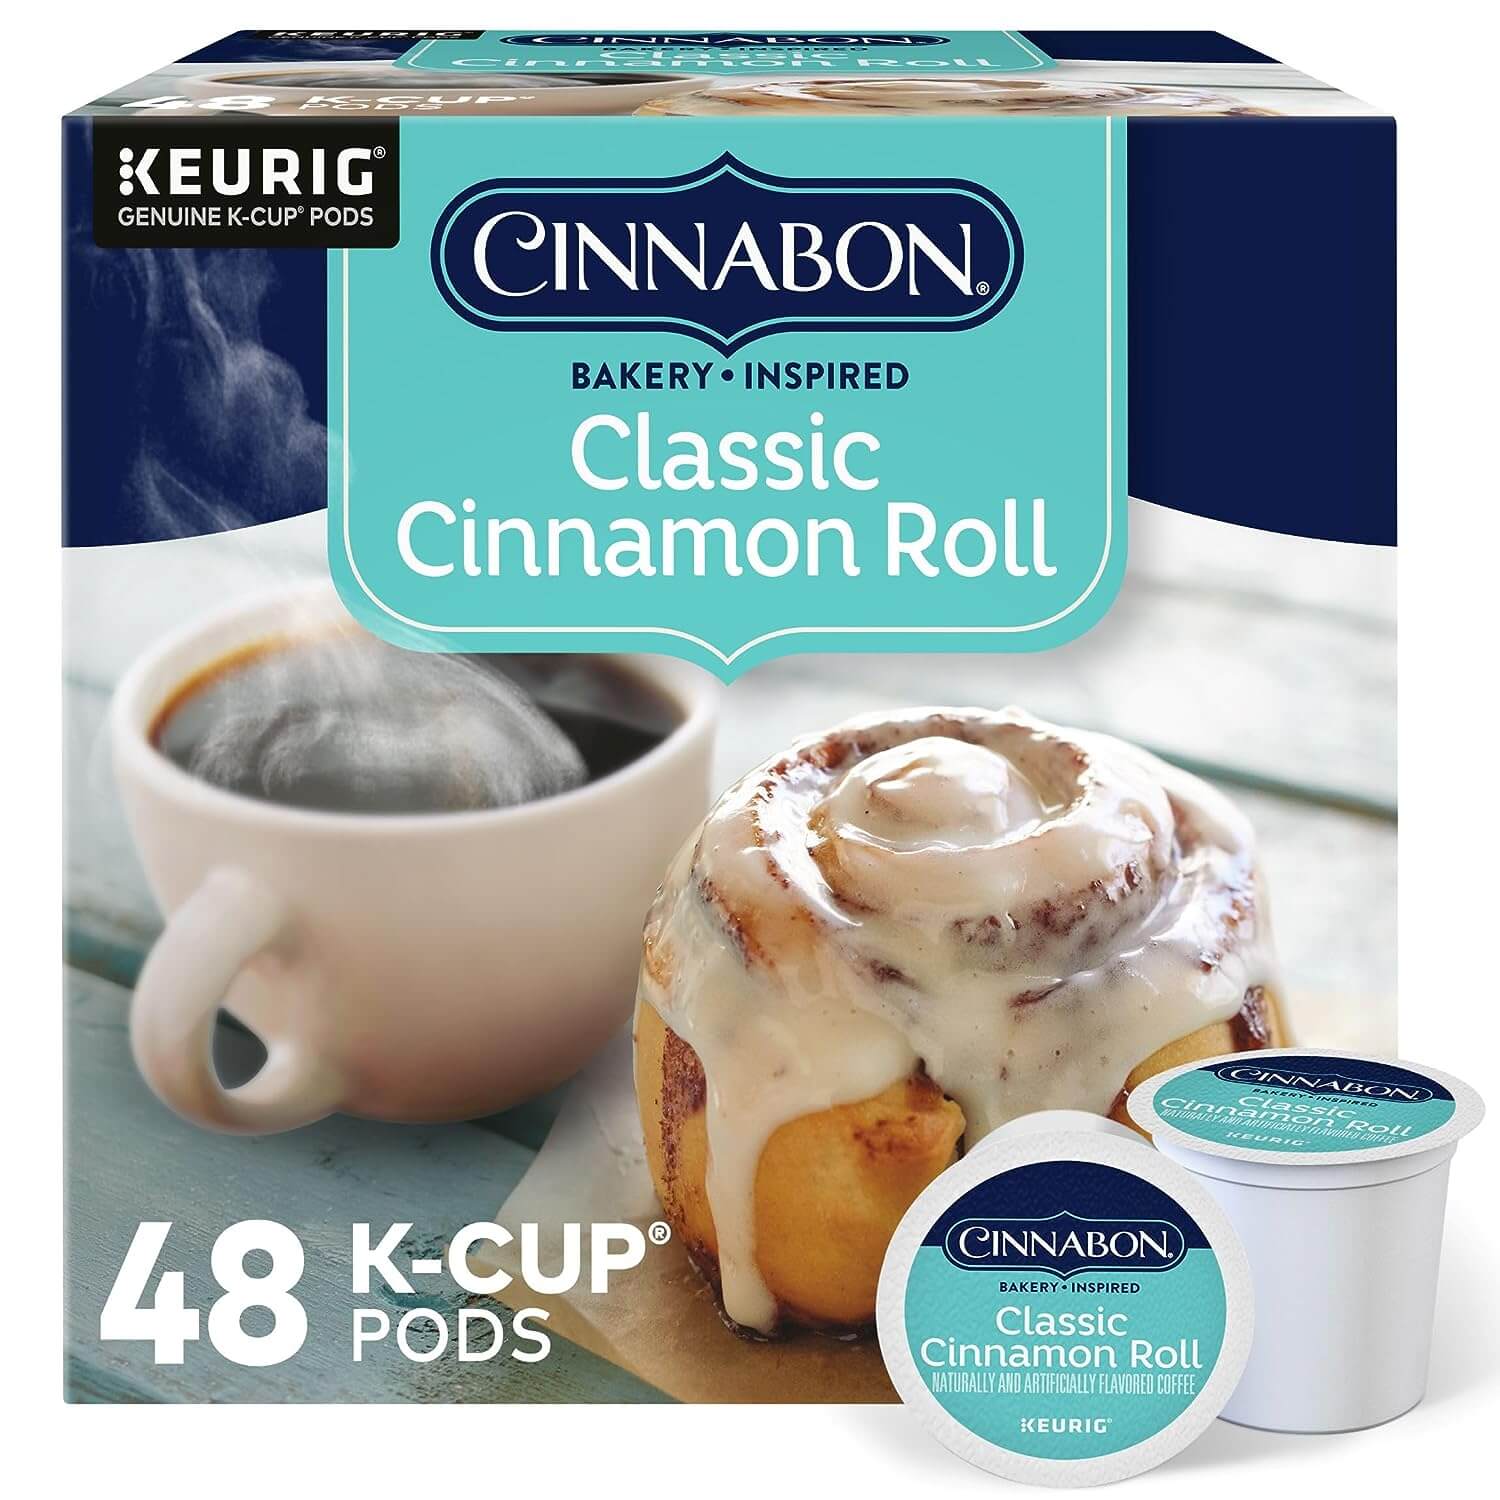 Amazon's Choice: Cinnabon Classic Cinnamon Roll K-Cups